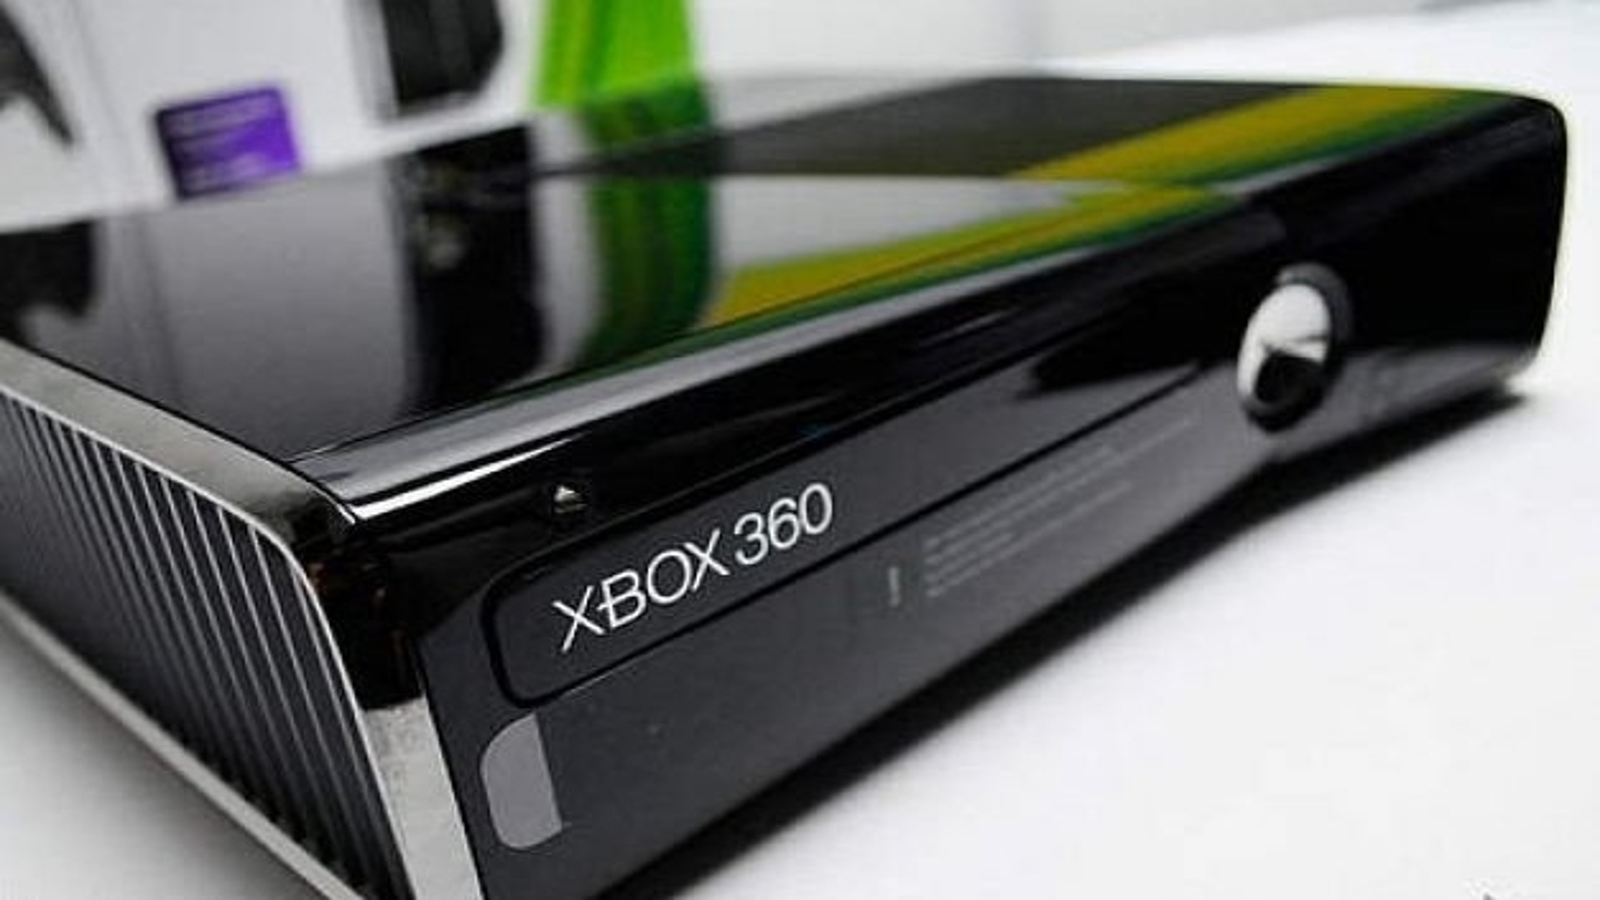 Console Xbox 360 Super Slim 500gb + 3 jogos em Promoção na Americanas